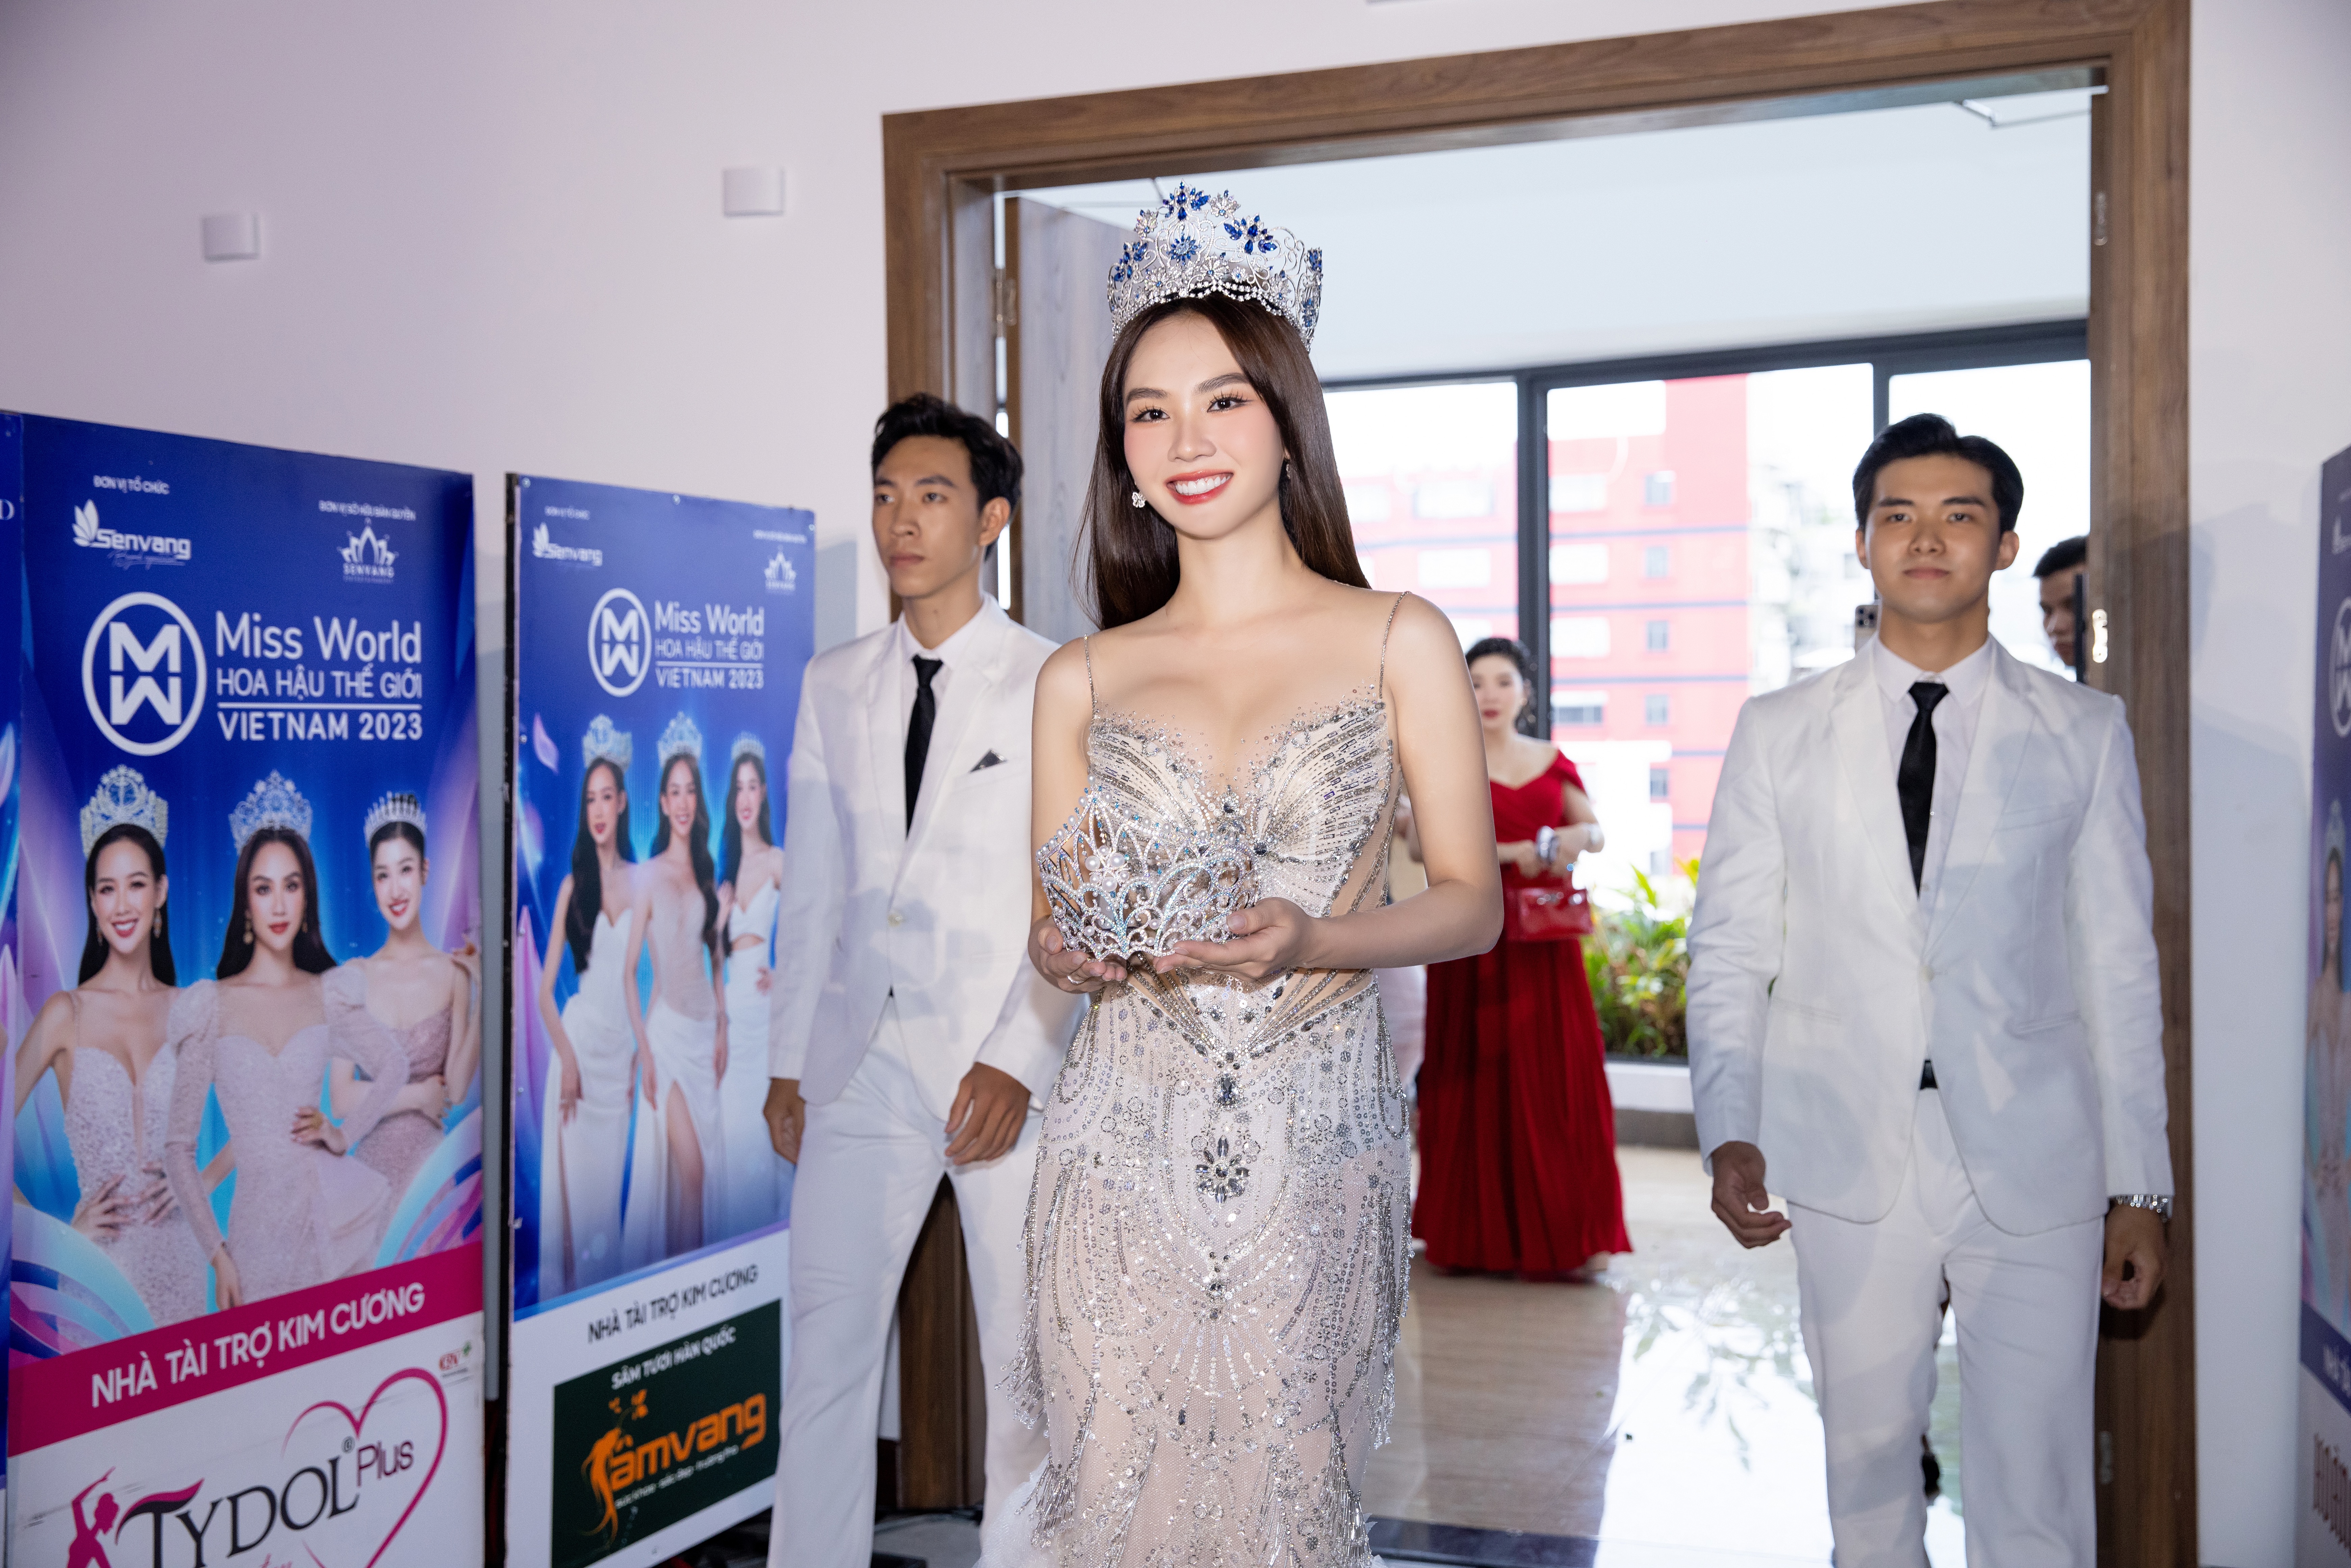 vuong-mien-miss-world-vietnam-2023-c243-g236-dac-biet_1.jpg